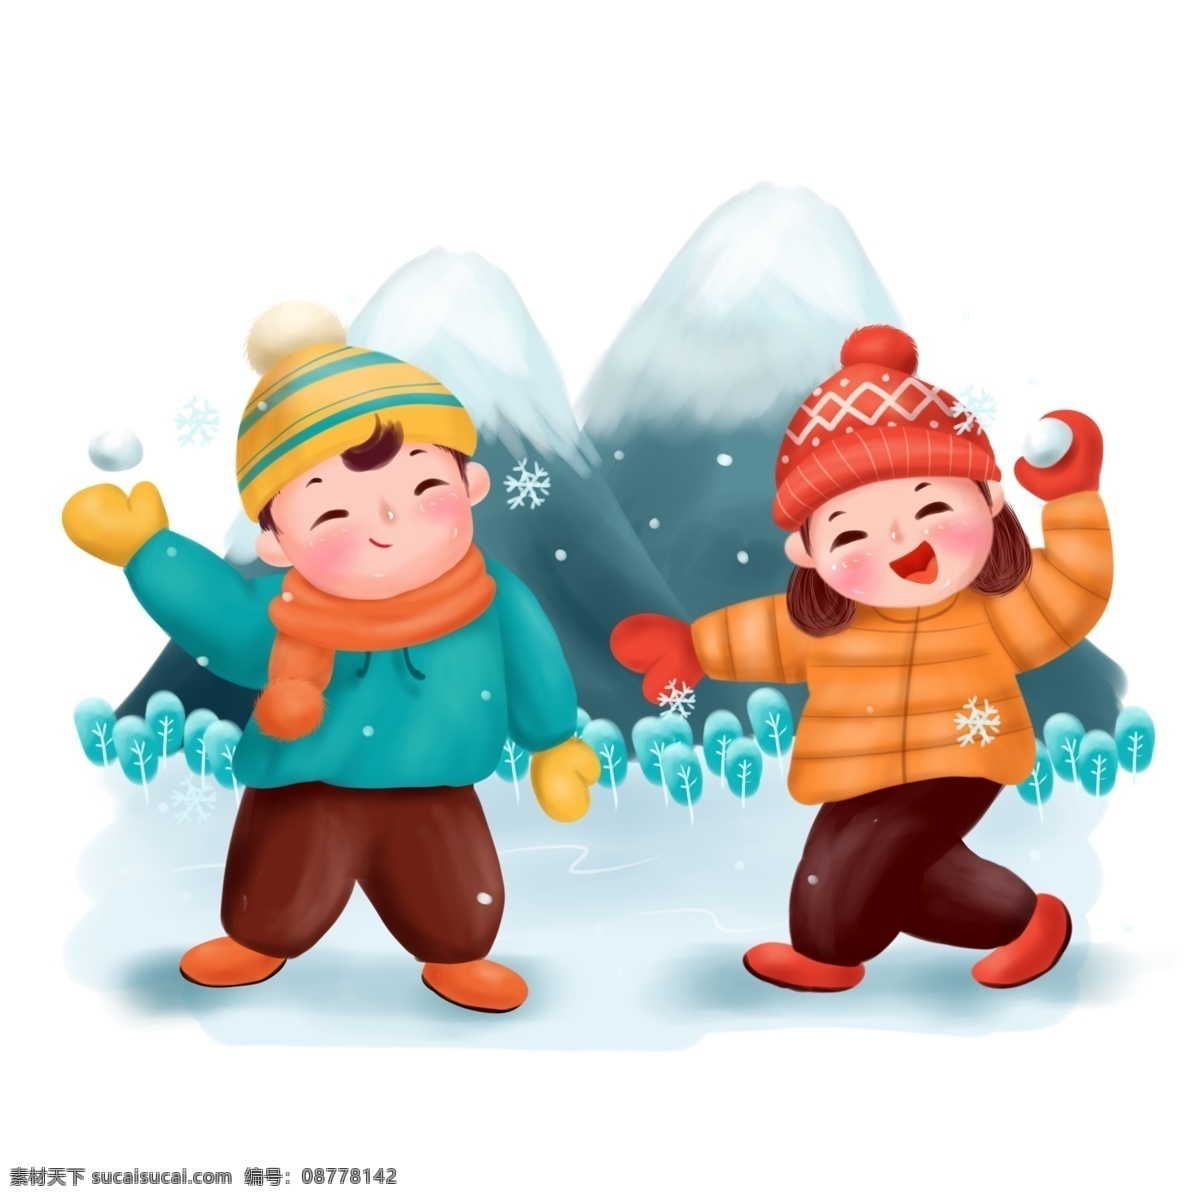 打雪仗 冬天 冬季 节气 下雪 儿童 商用 插画 配 图 人物 游戏 可爱 雪花 雪山 玩耍 嬉戏 活动 手绘 配图 卡通